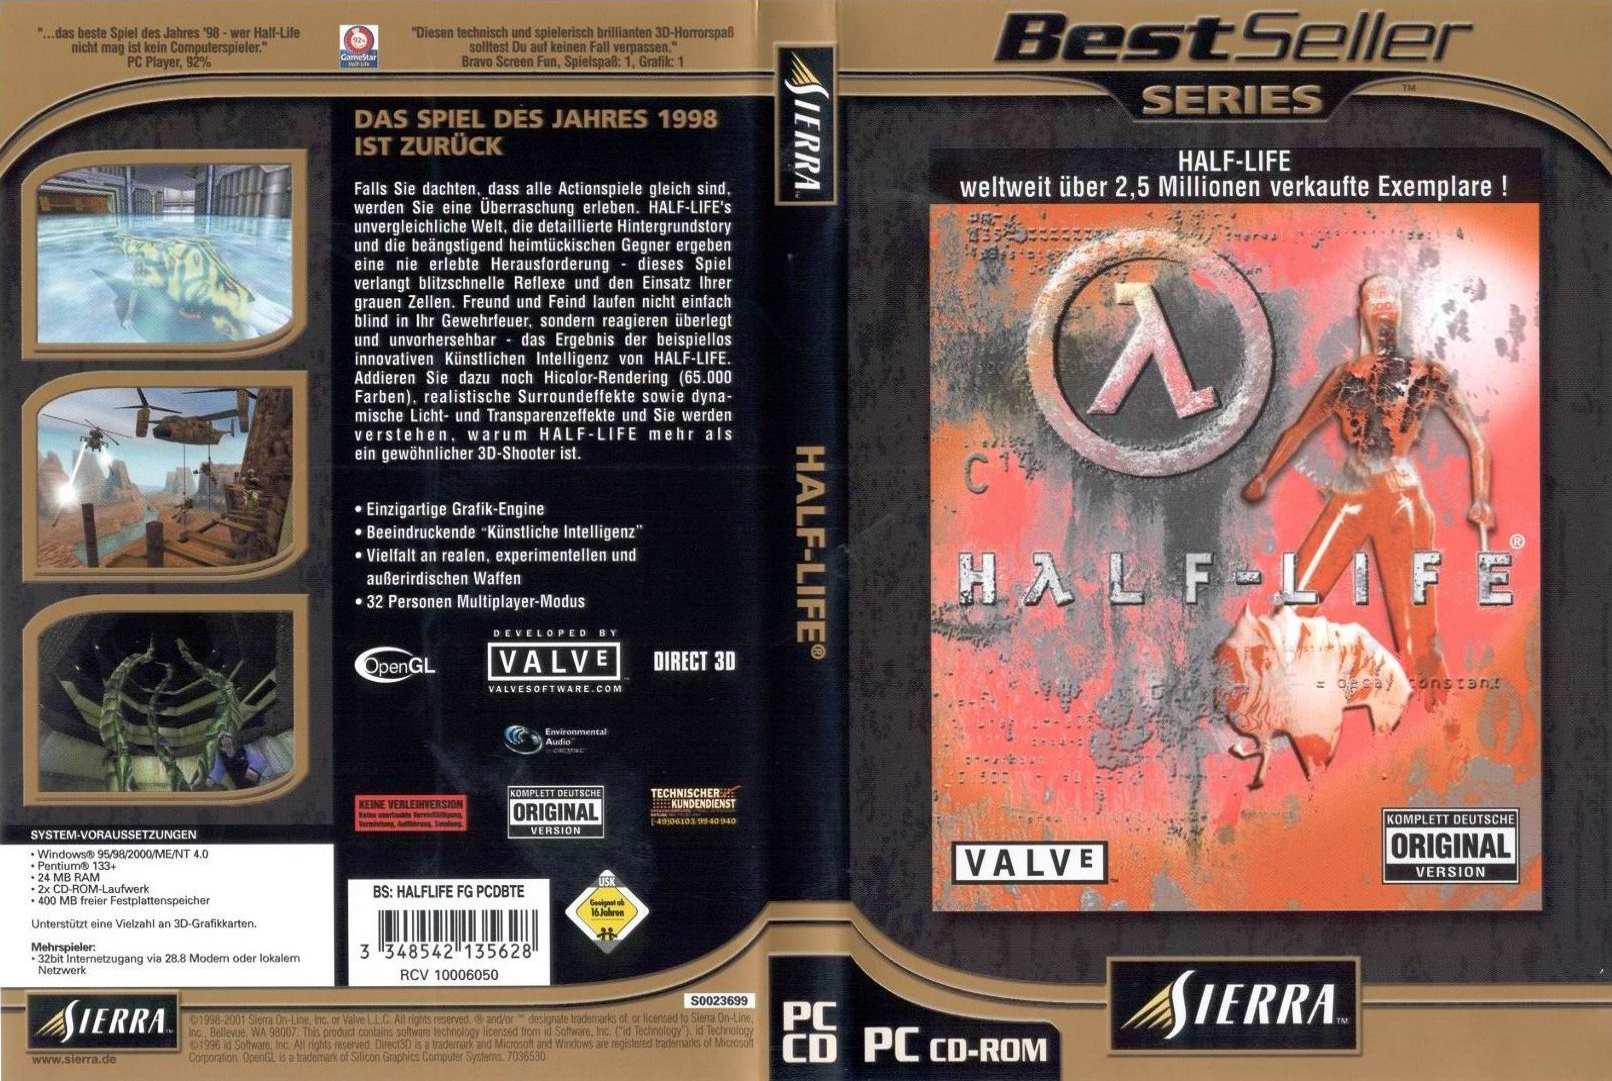 Half-Life: Bestseller Series - DVD obal